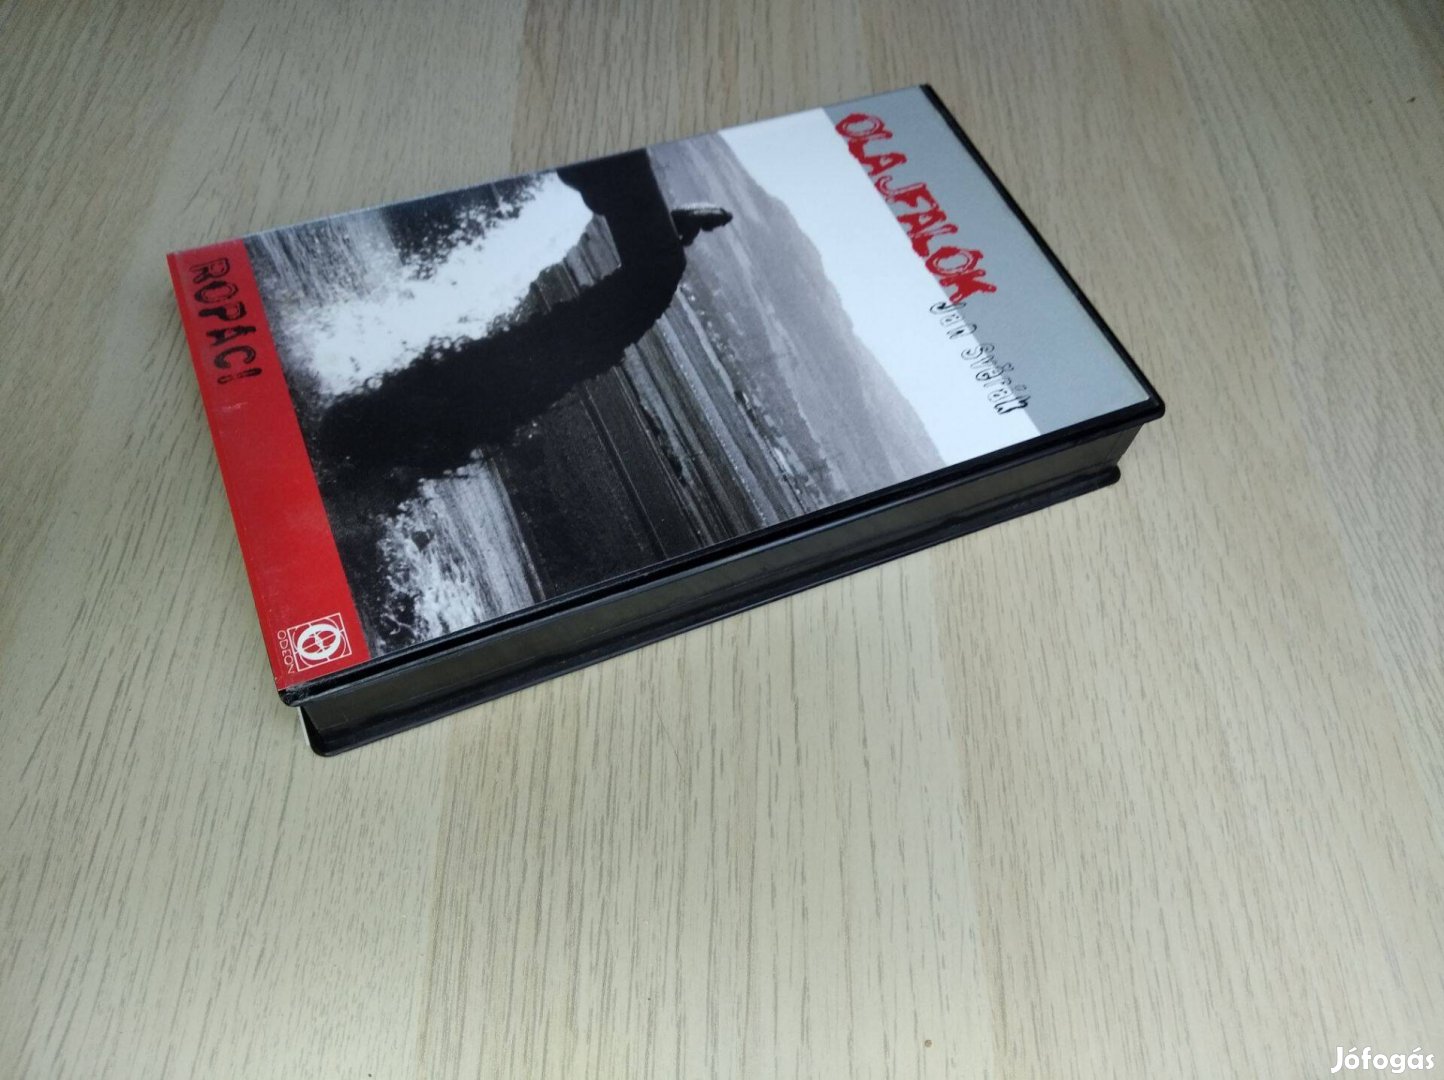 Olajfalók / VHS Kazetta (Feliratos)